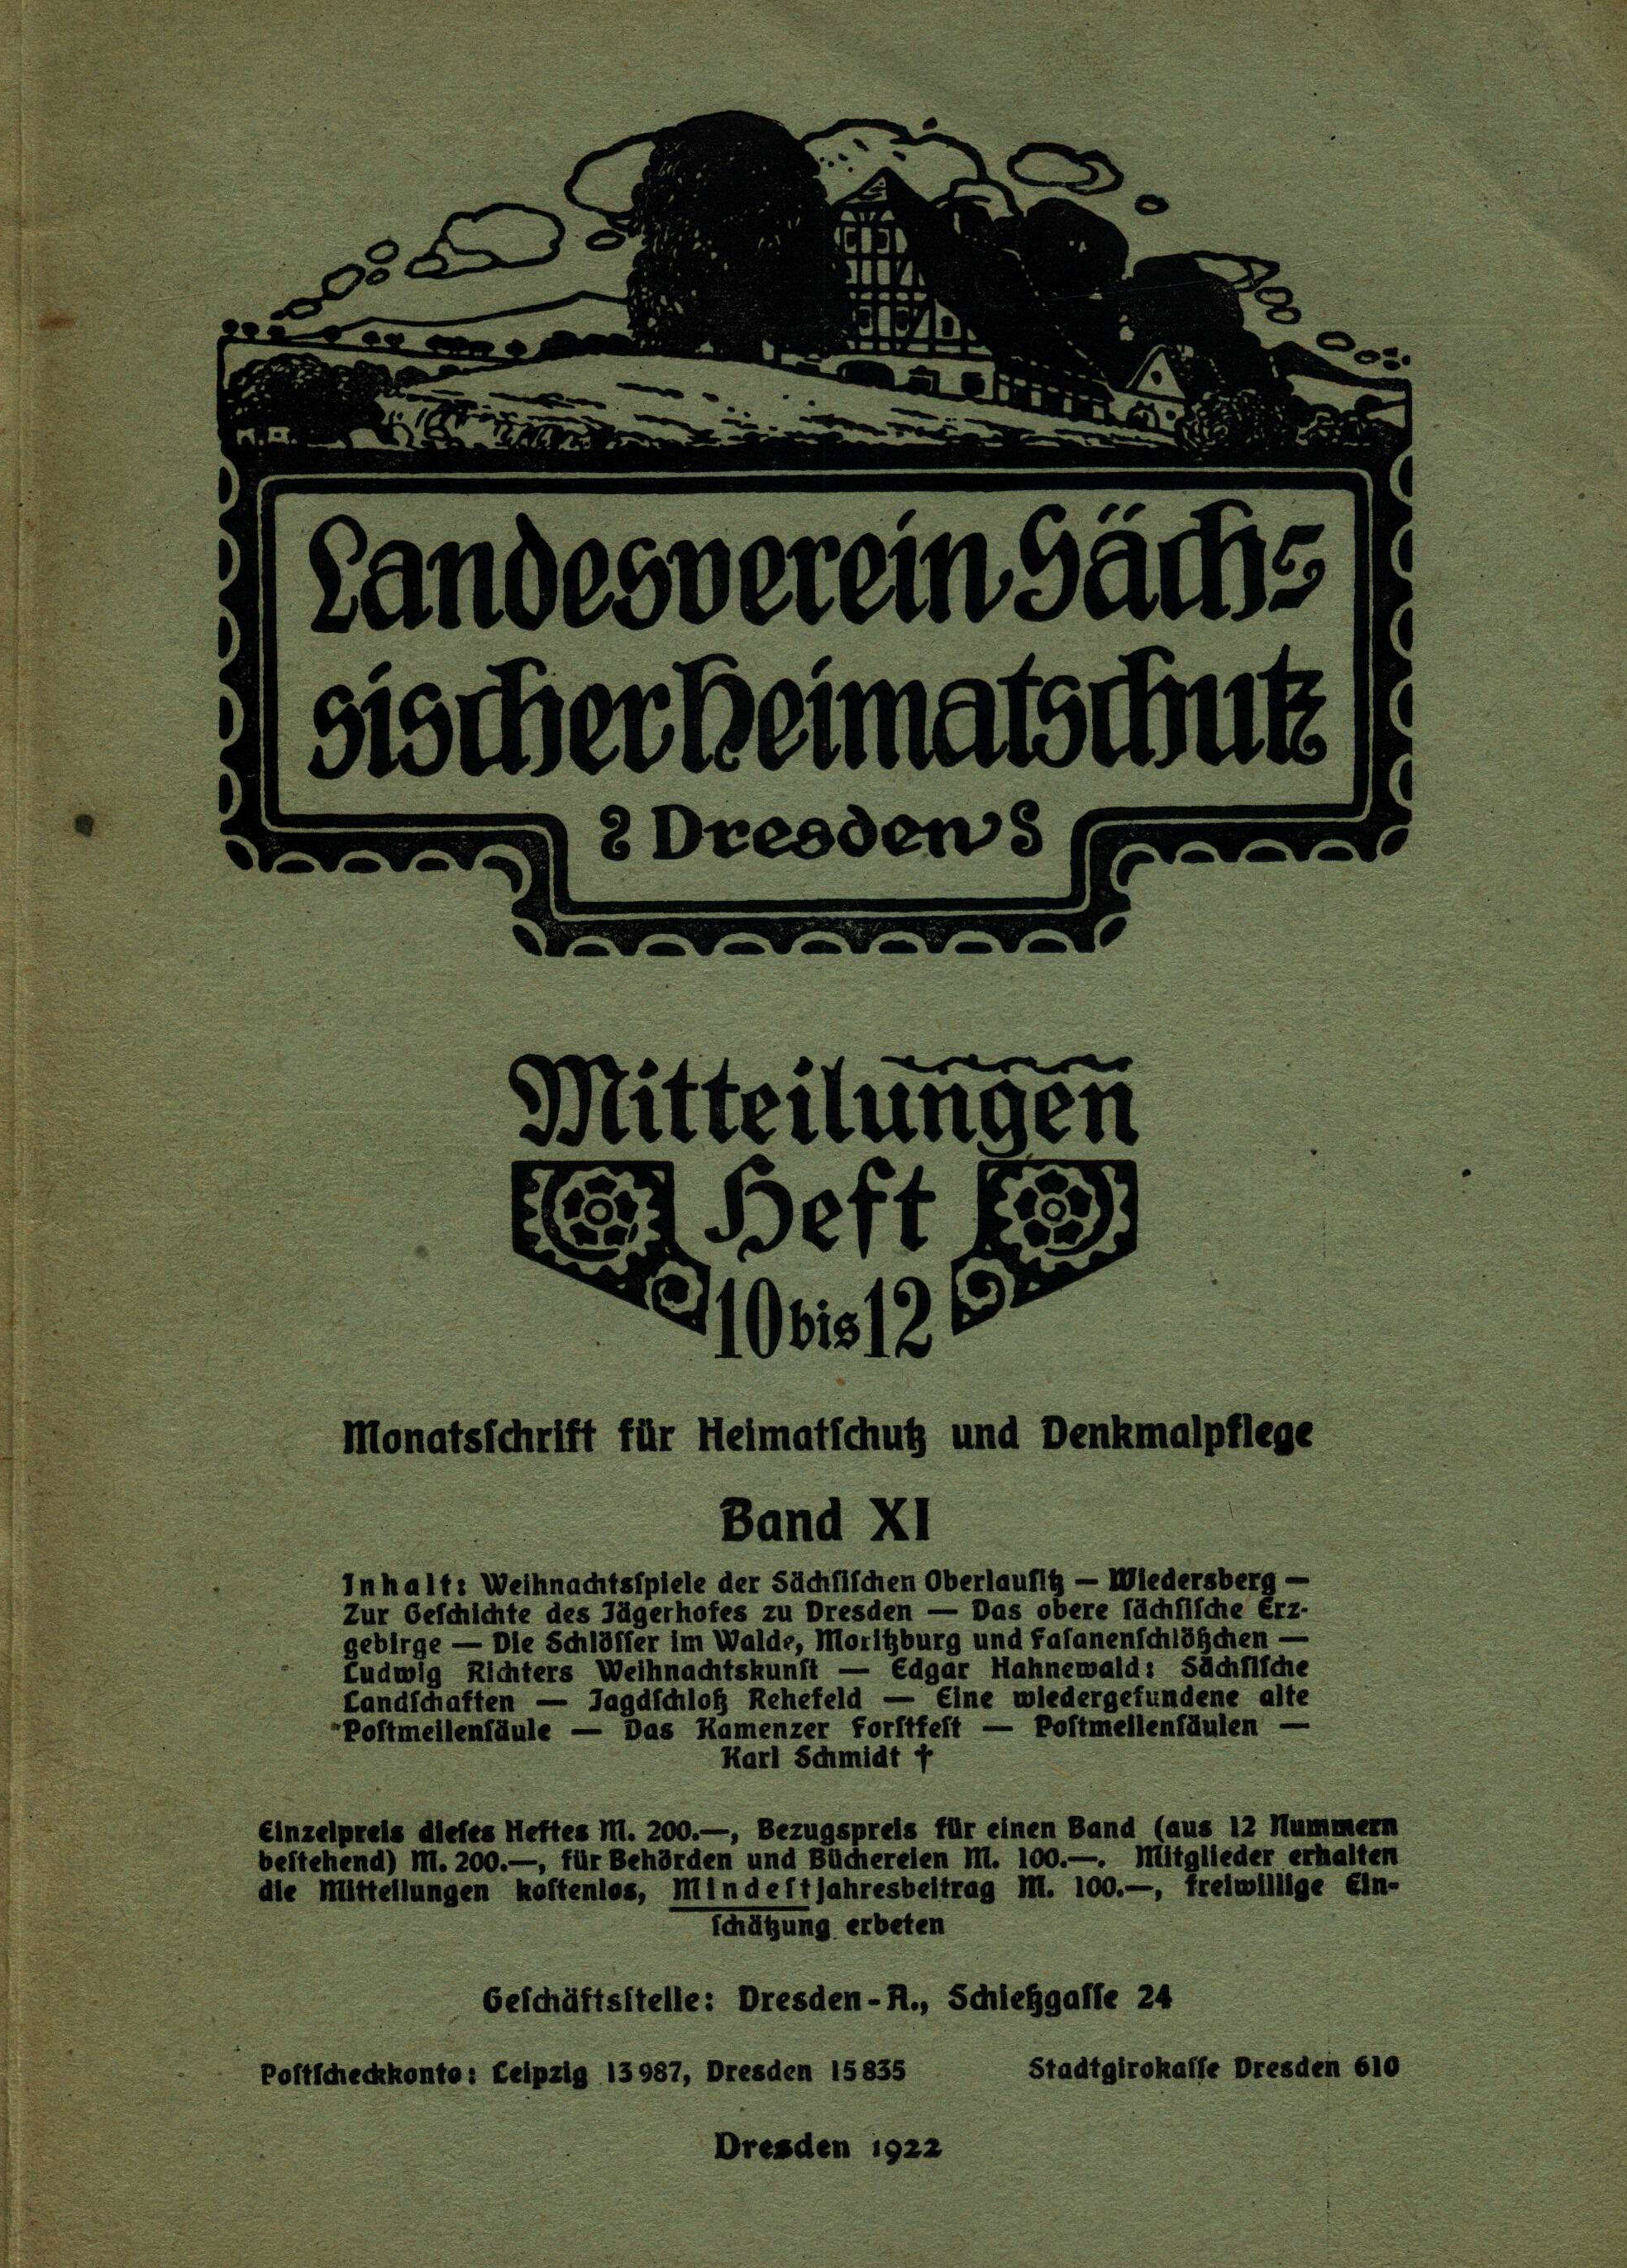 Landesverein Sächsischer Heimatschutz — Mitteilungen Band XI, Heft 10-12